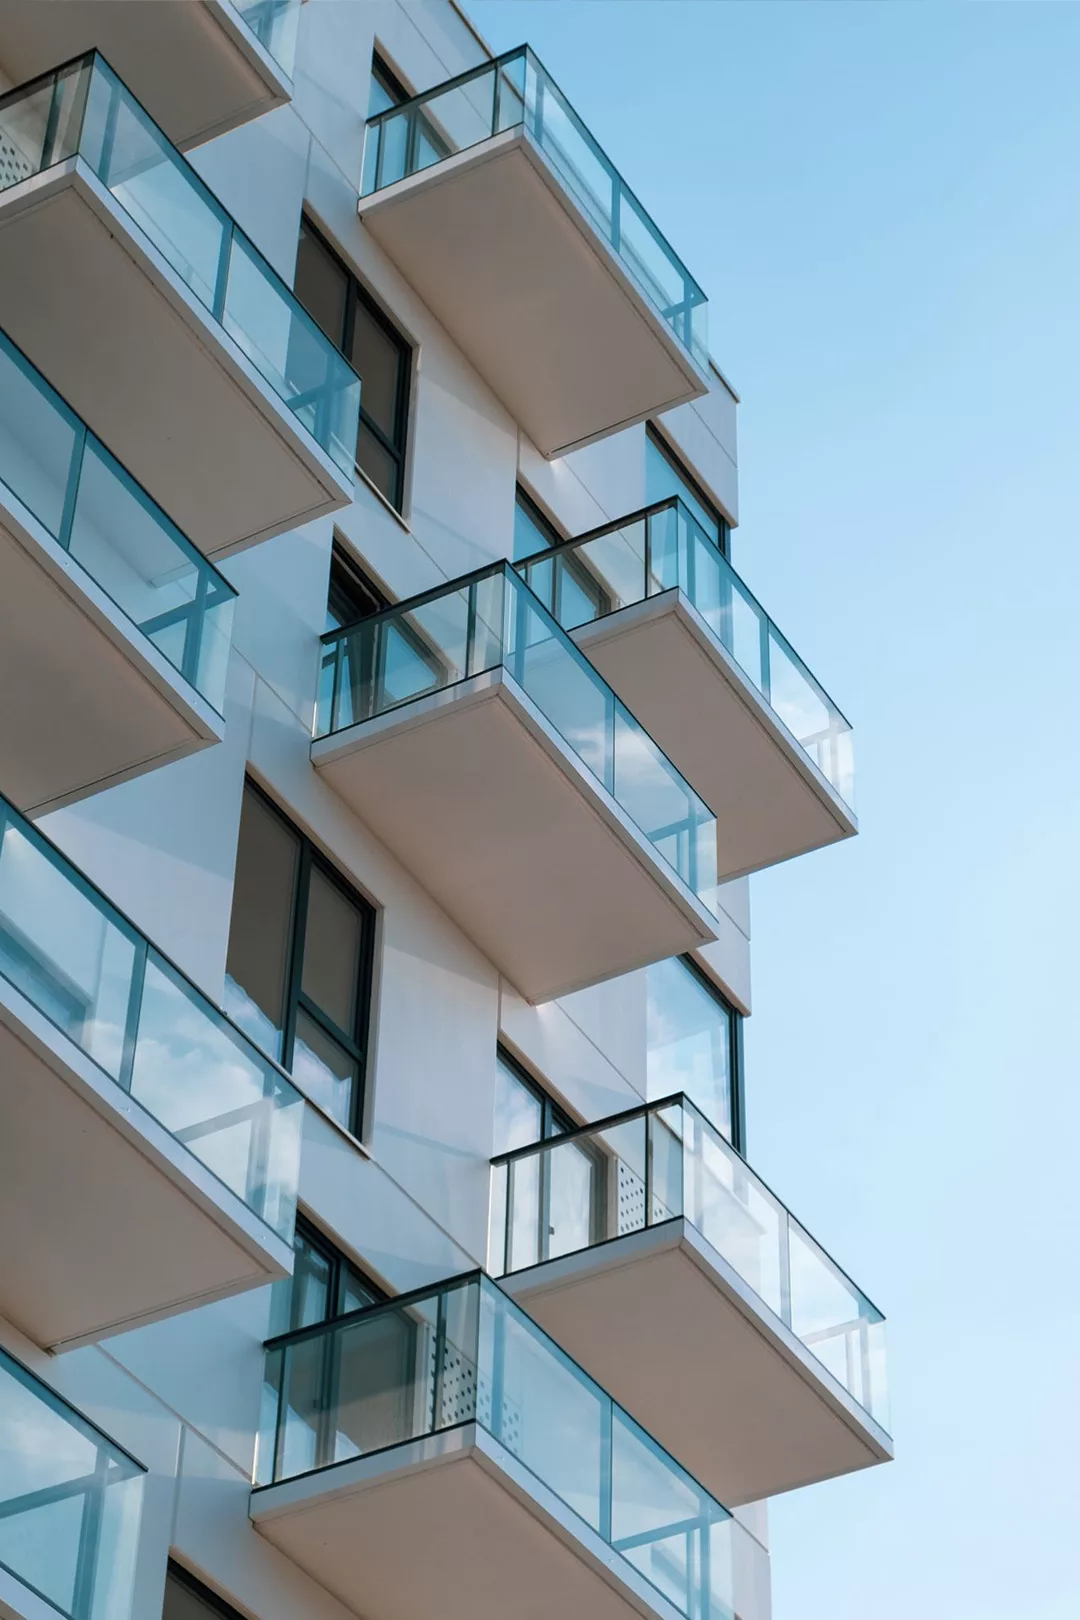 Foto eines modernen Hauses mit vielen Glasflächen und gläsernen Balkonen